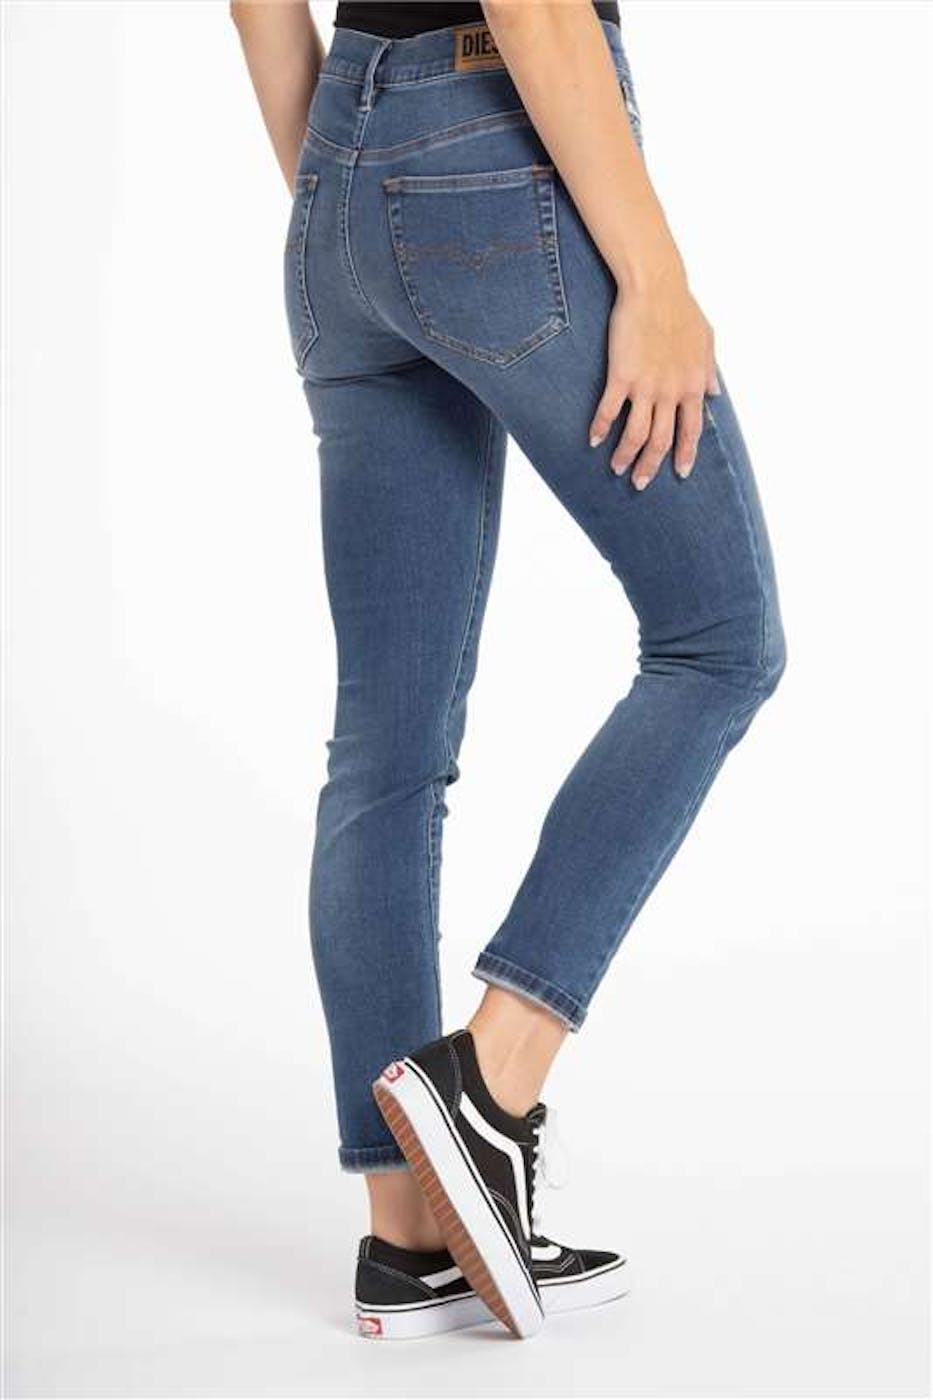 Diesel - Blauwe D-Roisin super skinny jeans